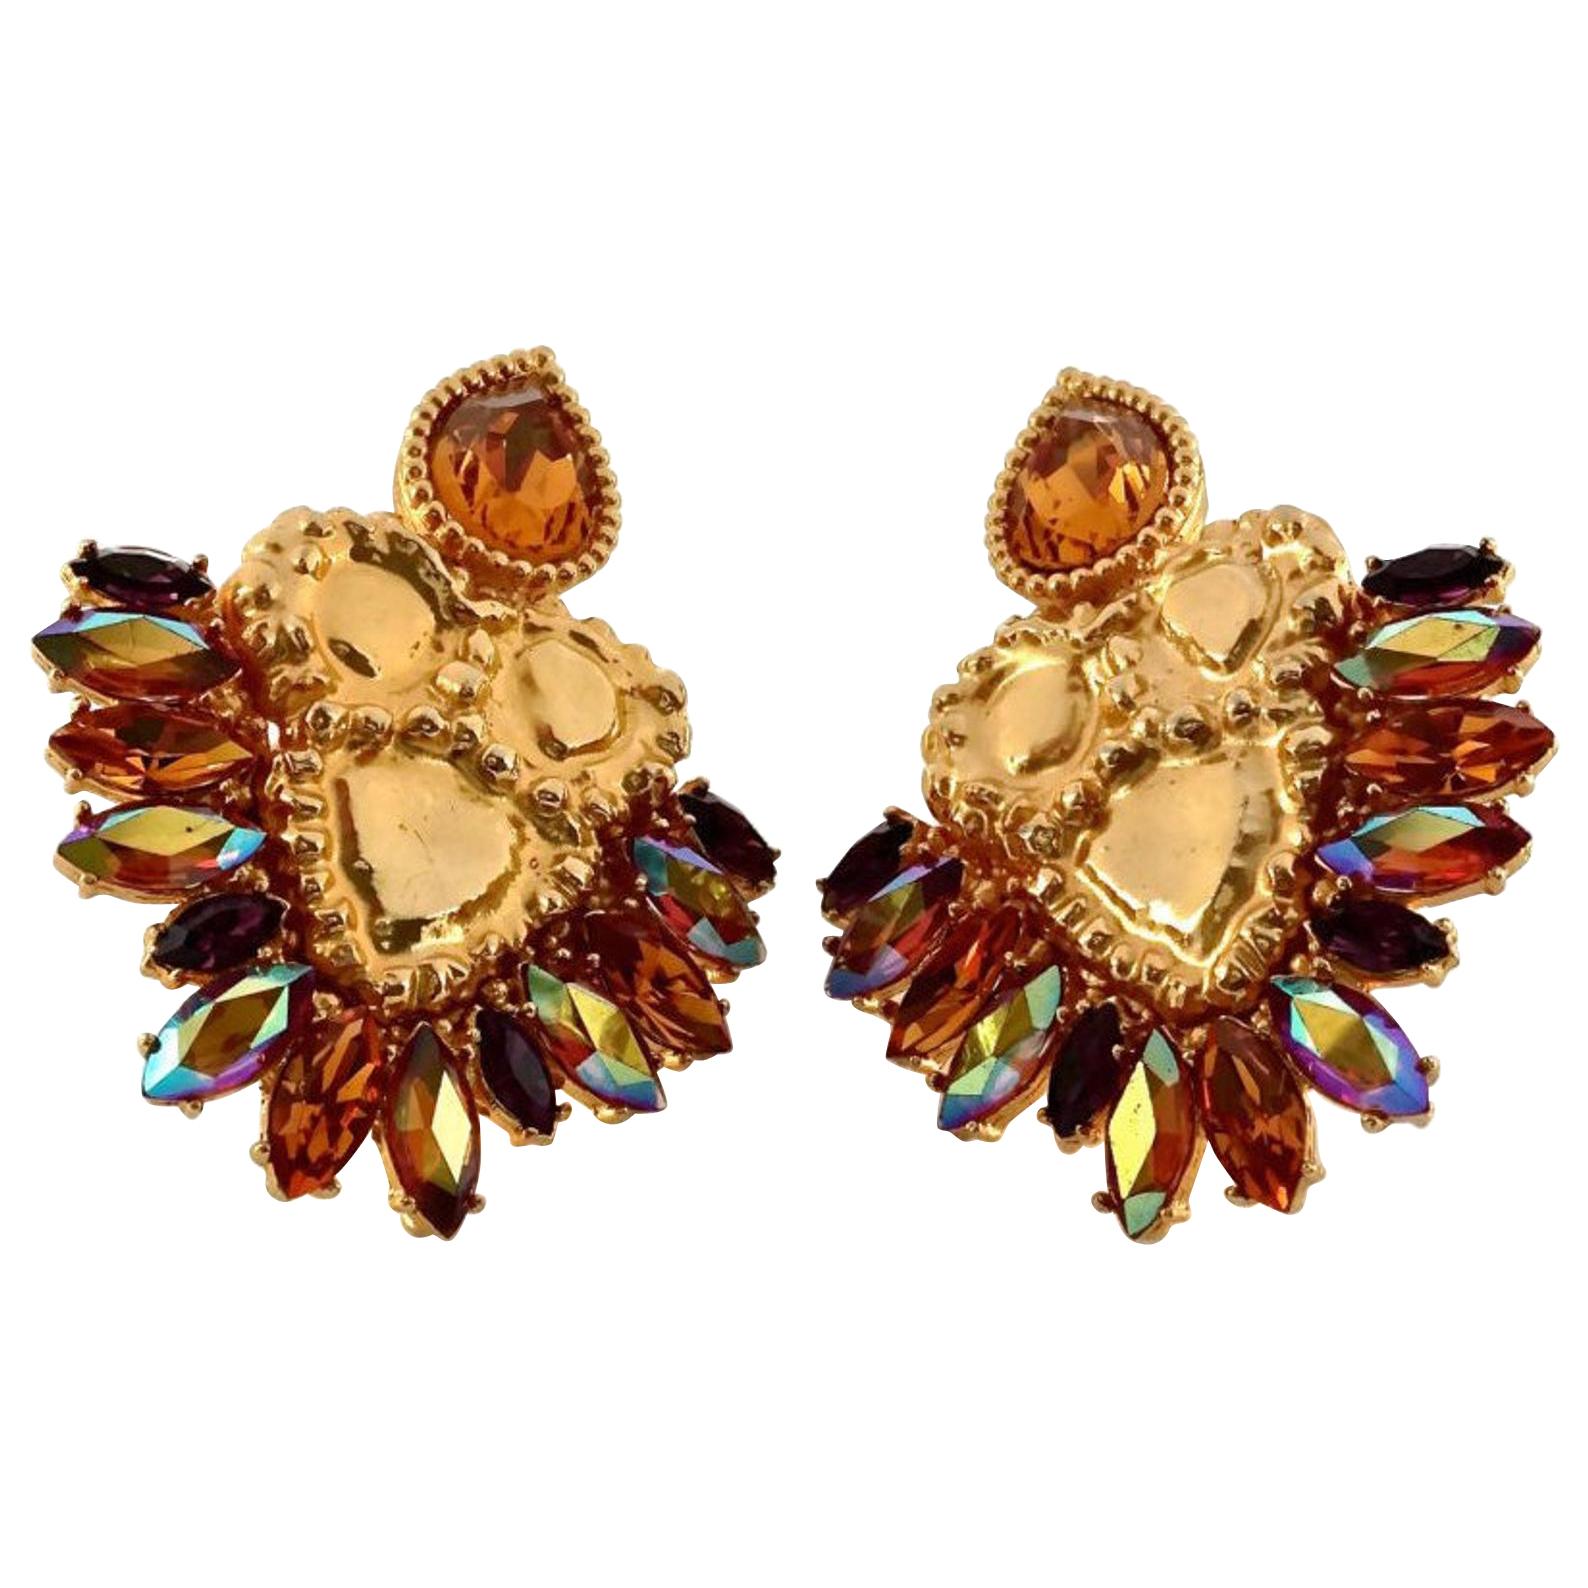 Vintage Massive YVES SAINT LAURENT Iridescent Topaz Rhinestone Jewelled Earrings